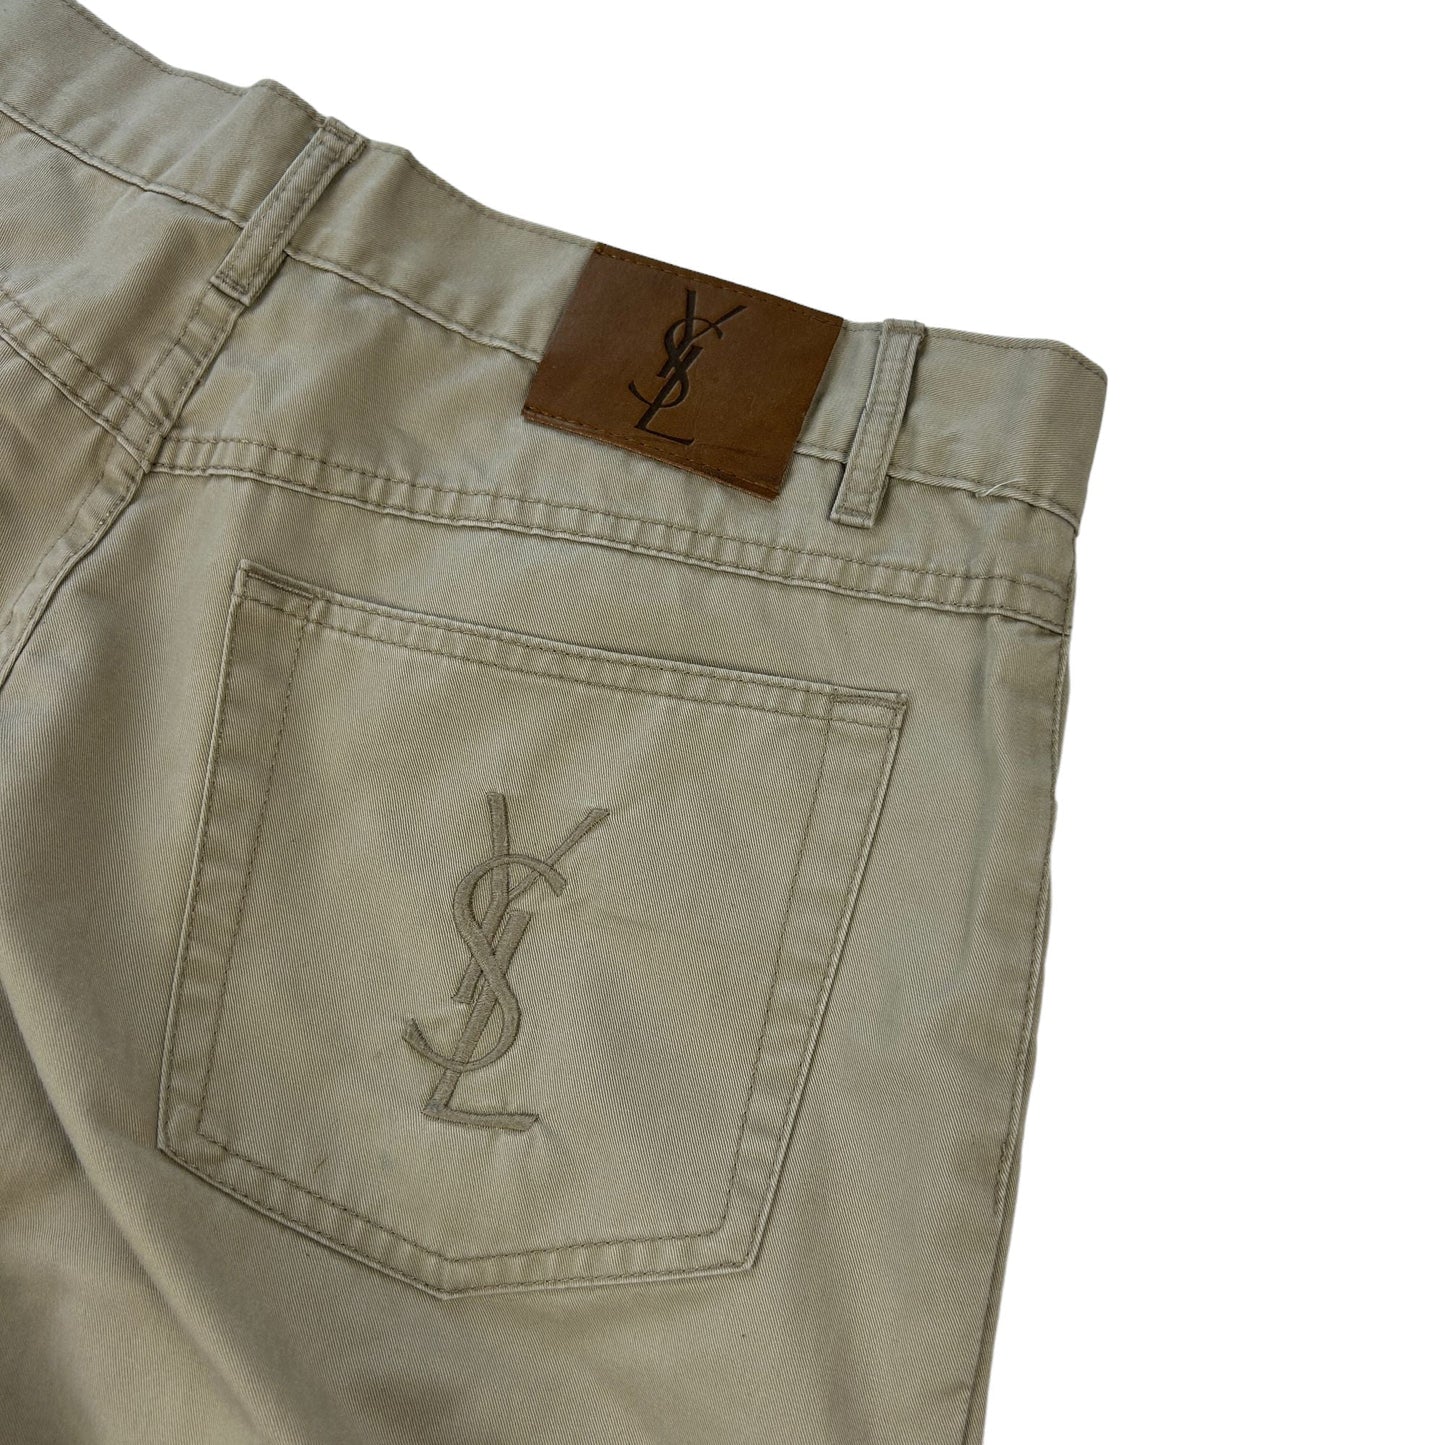 Vintage Yves Saint Laurent Trousers Size W34